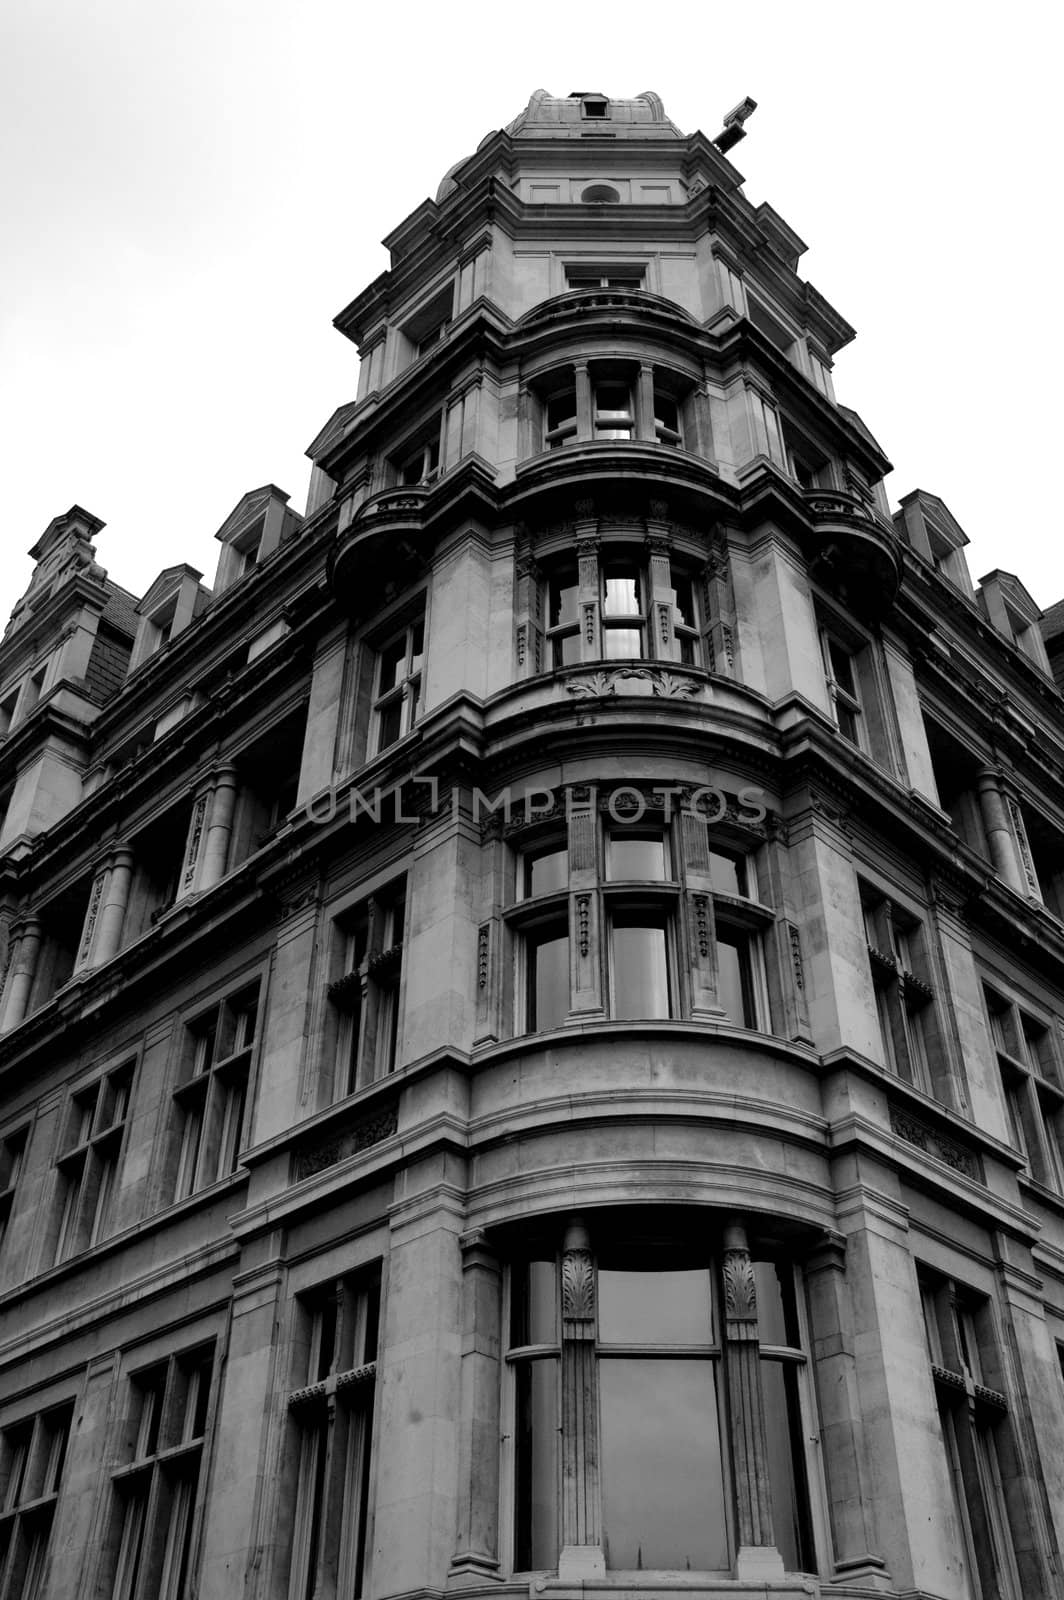 Beautiful architecture around London taken with a Nikon.